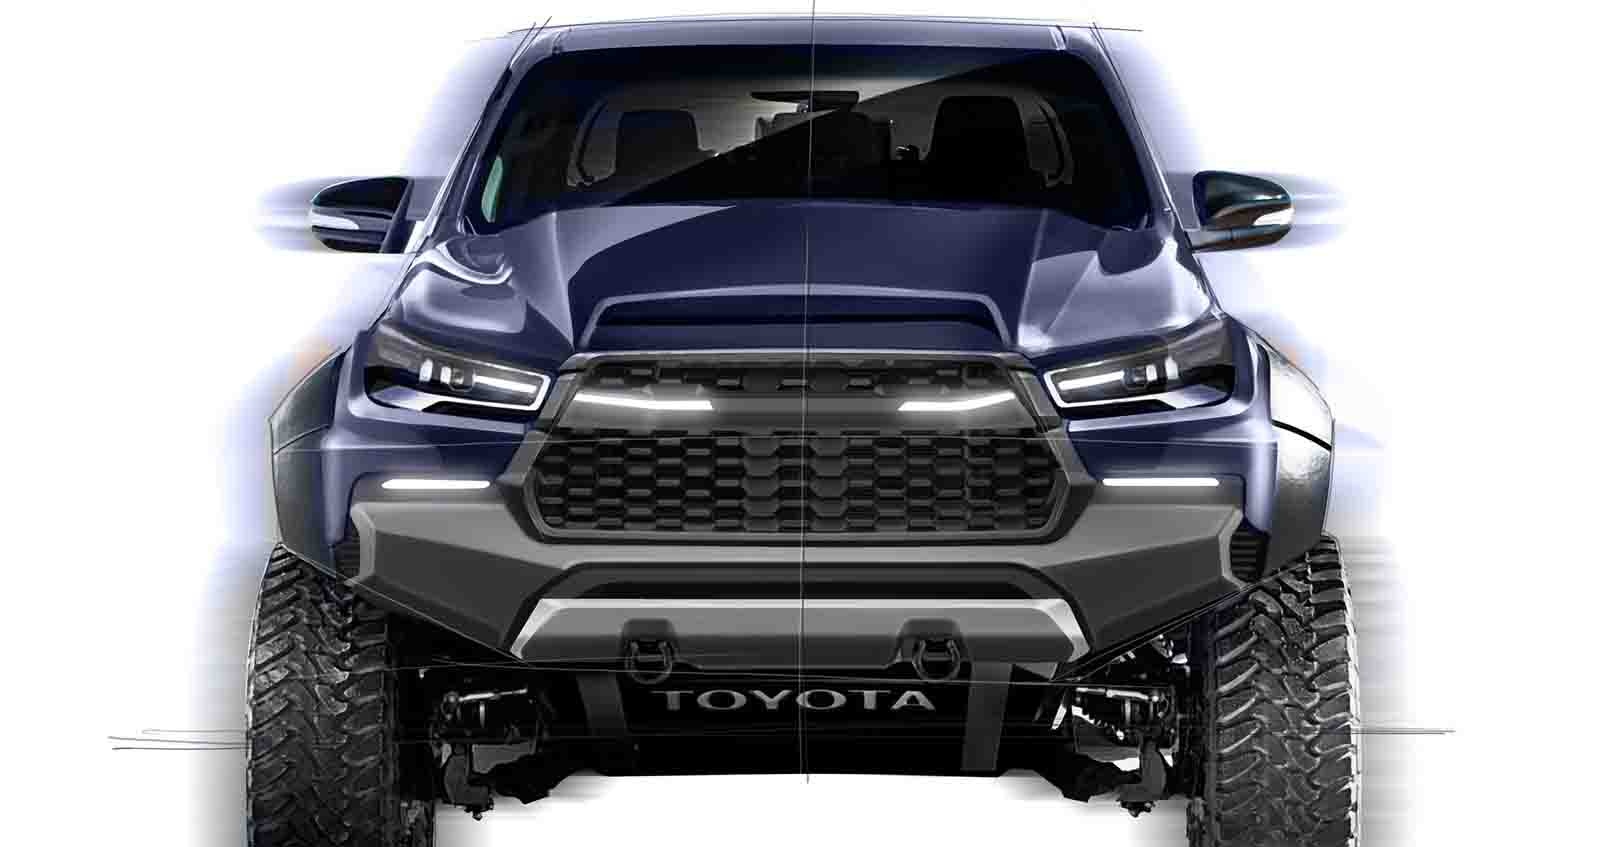 Toyota Hilux Revo Concept sketch ภาพฝัน ตัวแรง คู่แข่ง Raptor